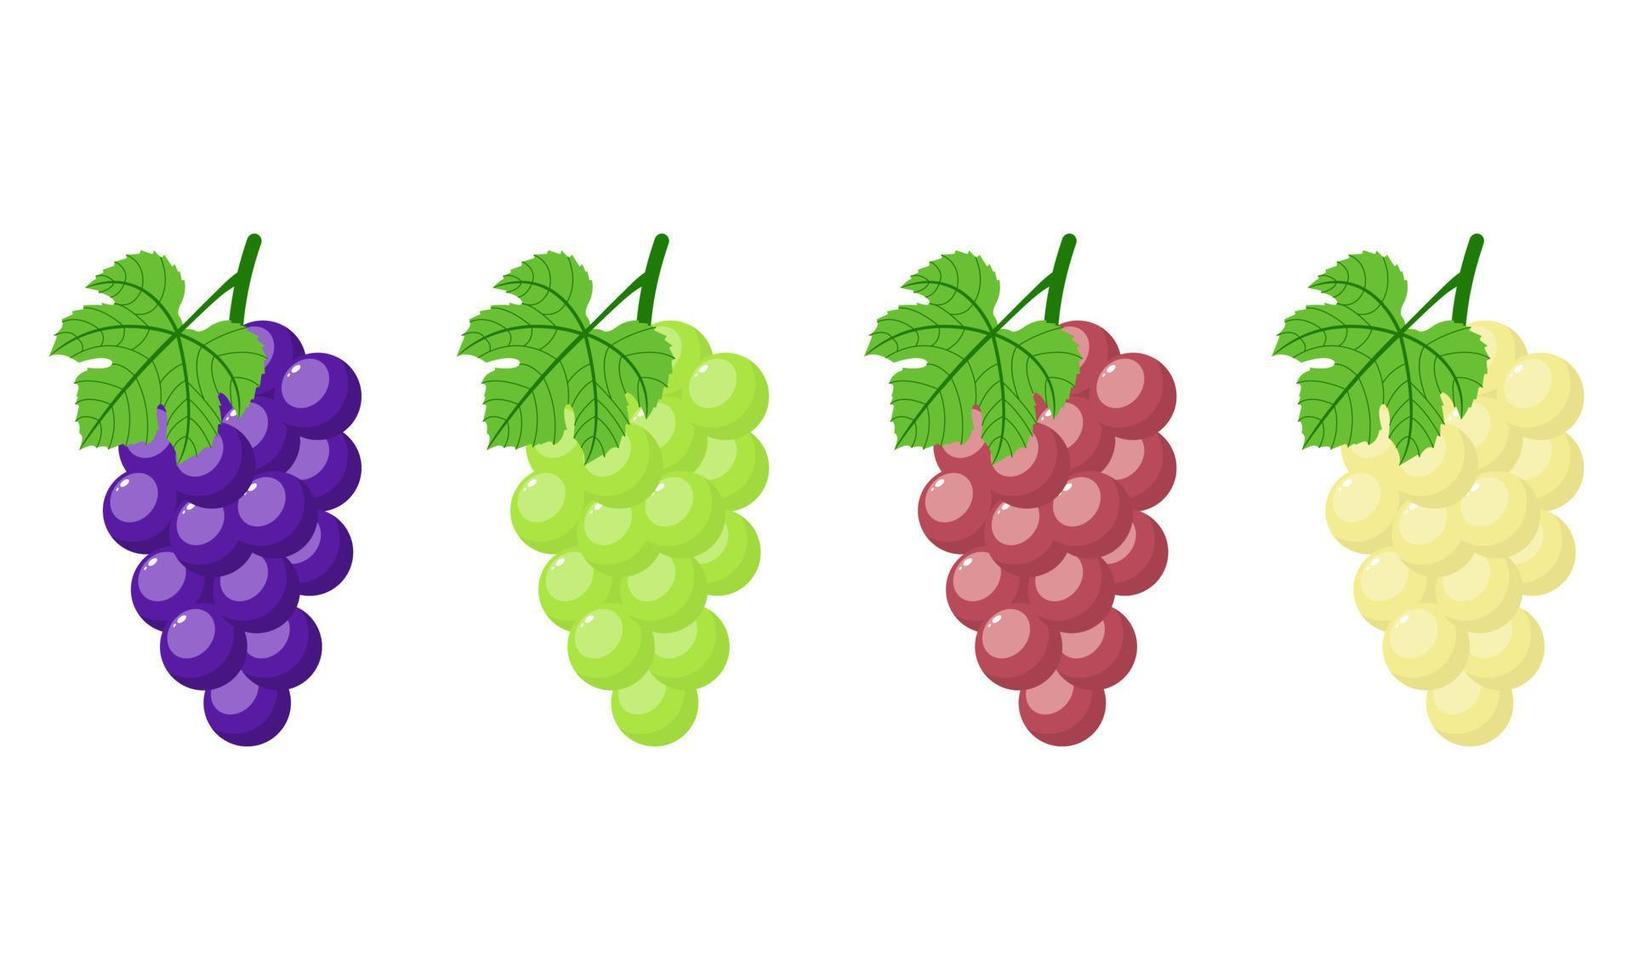 ensemble de raisins différents isolés sur fond blanc. grappe de raisins violets, verts, rouges, blancs avec tige et feuille. style bande dessinée. illustration vectorielle pour toute conception vecteur